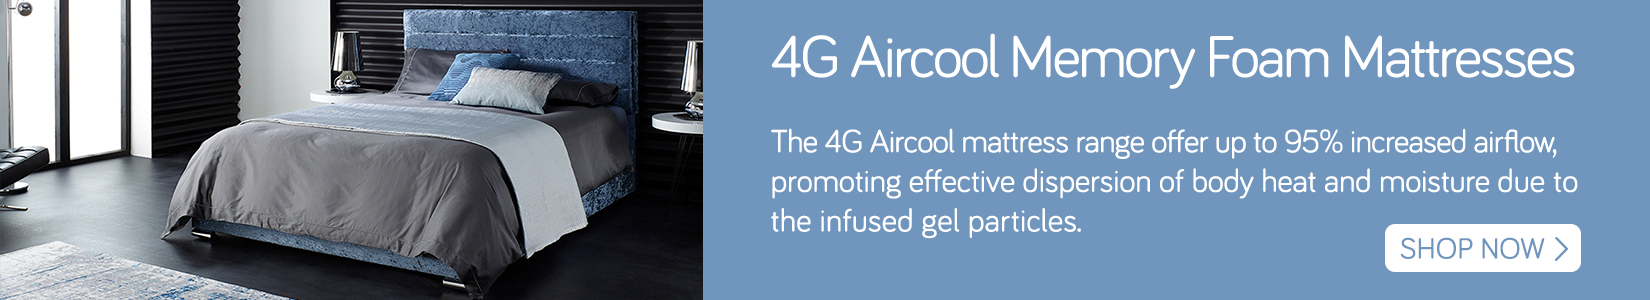 4G aircool mattress banner